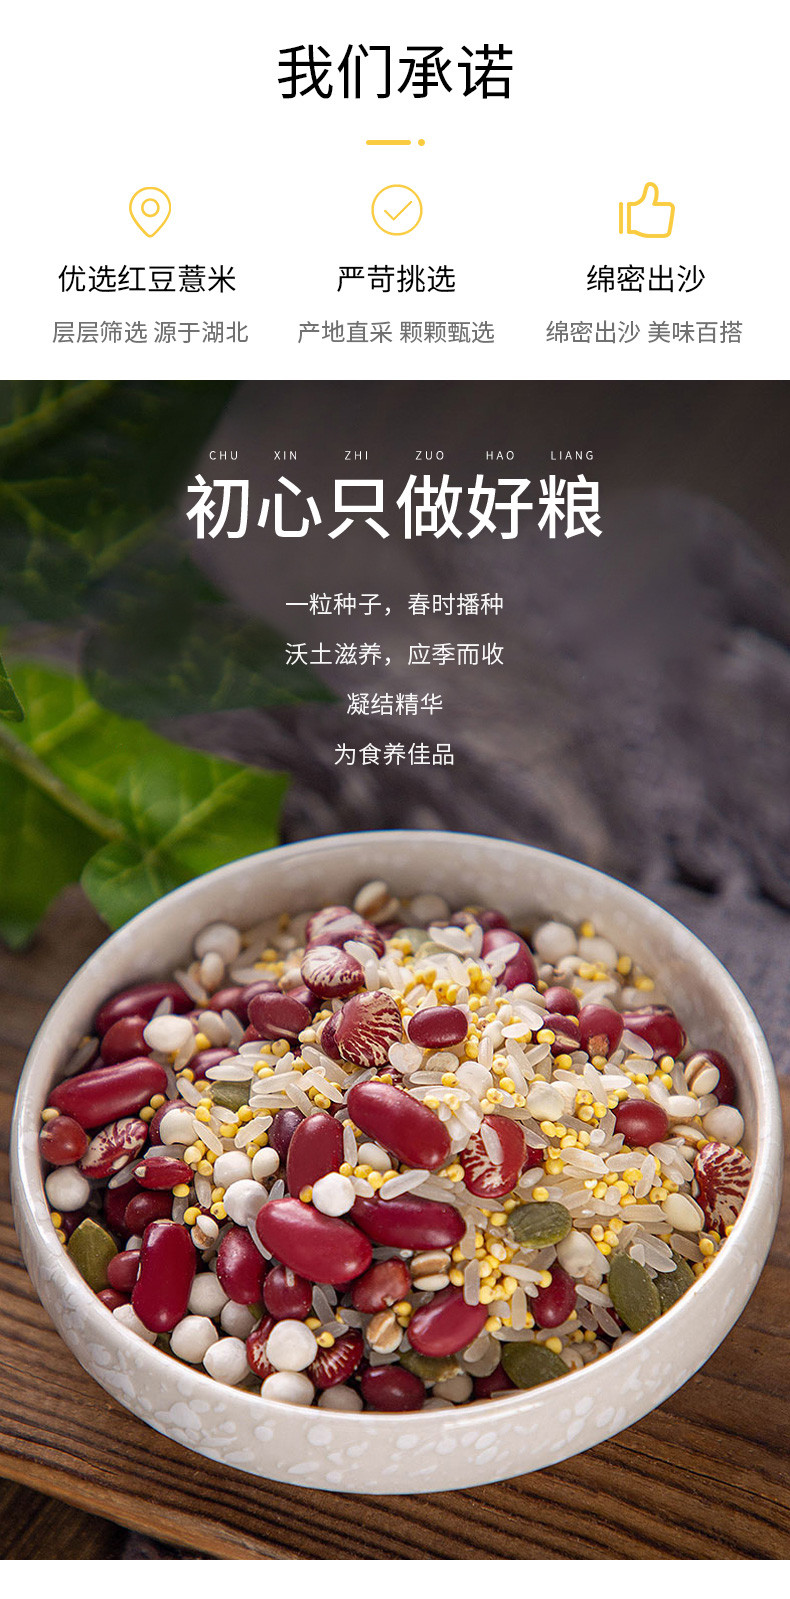 绿帝 红豆薏米粥350g